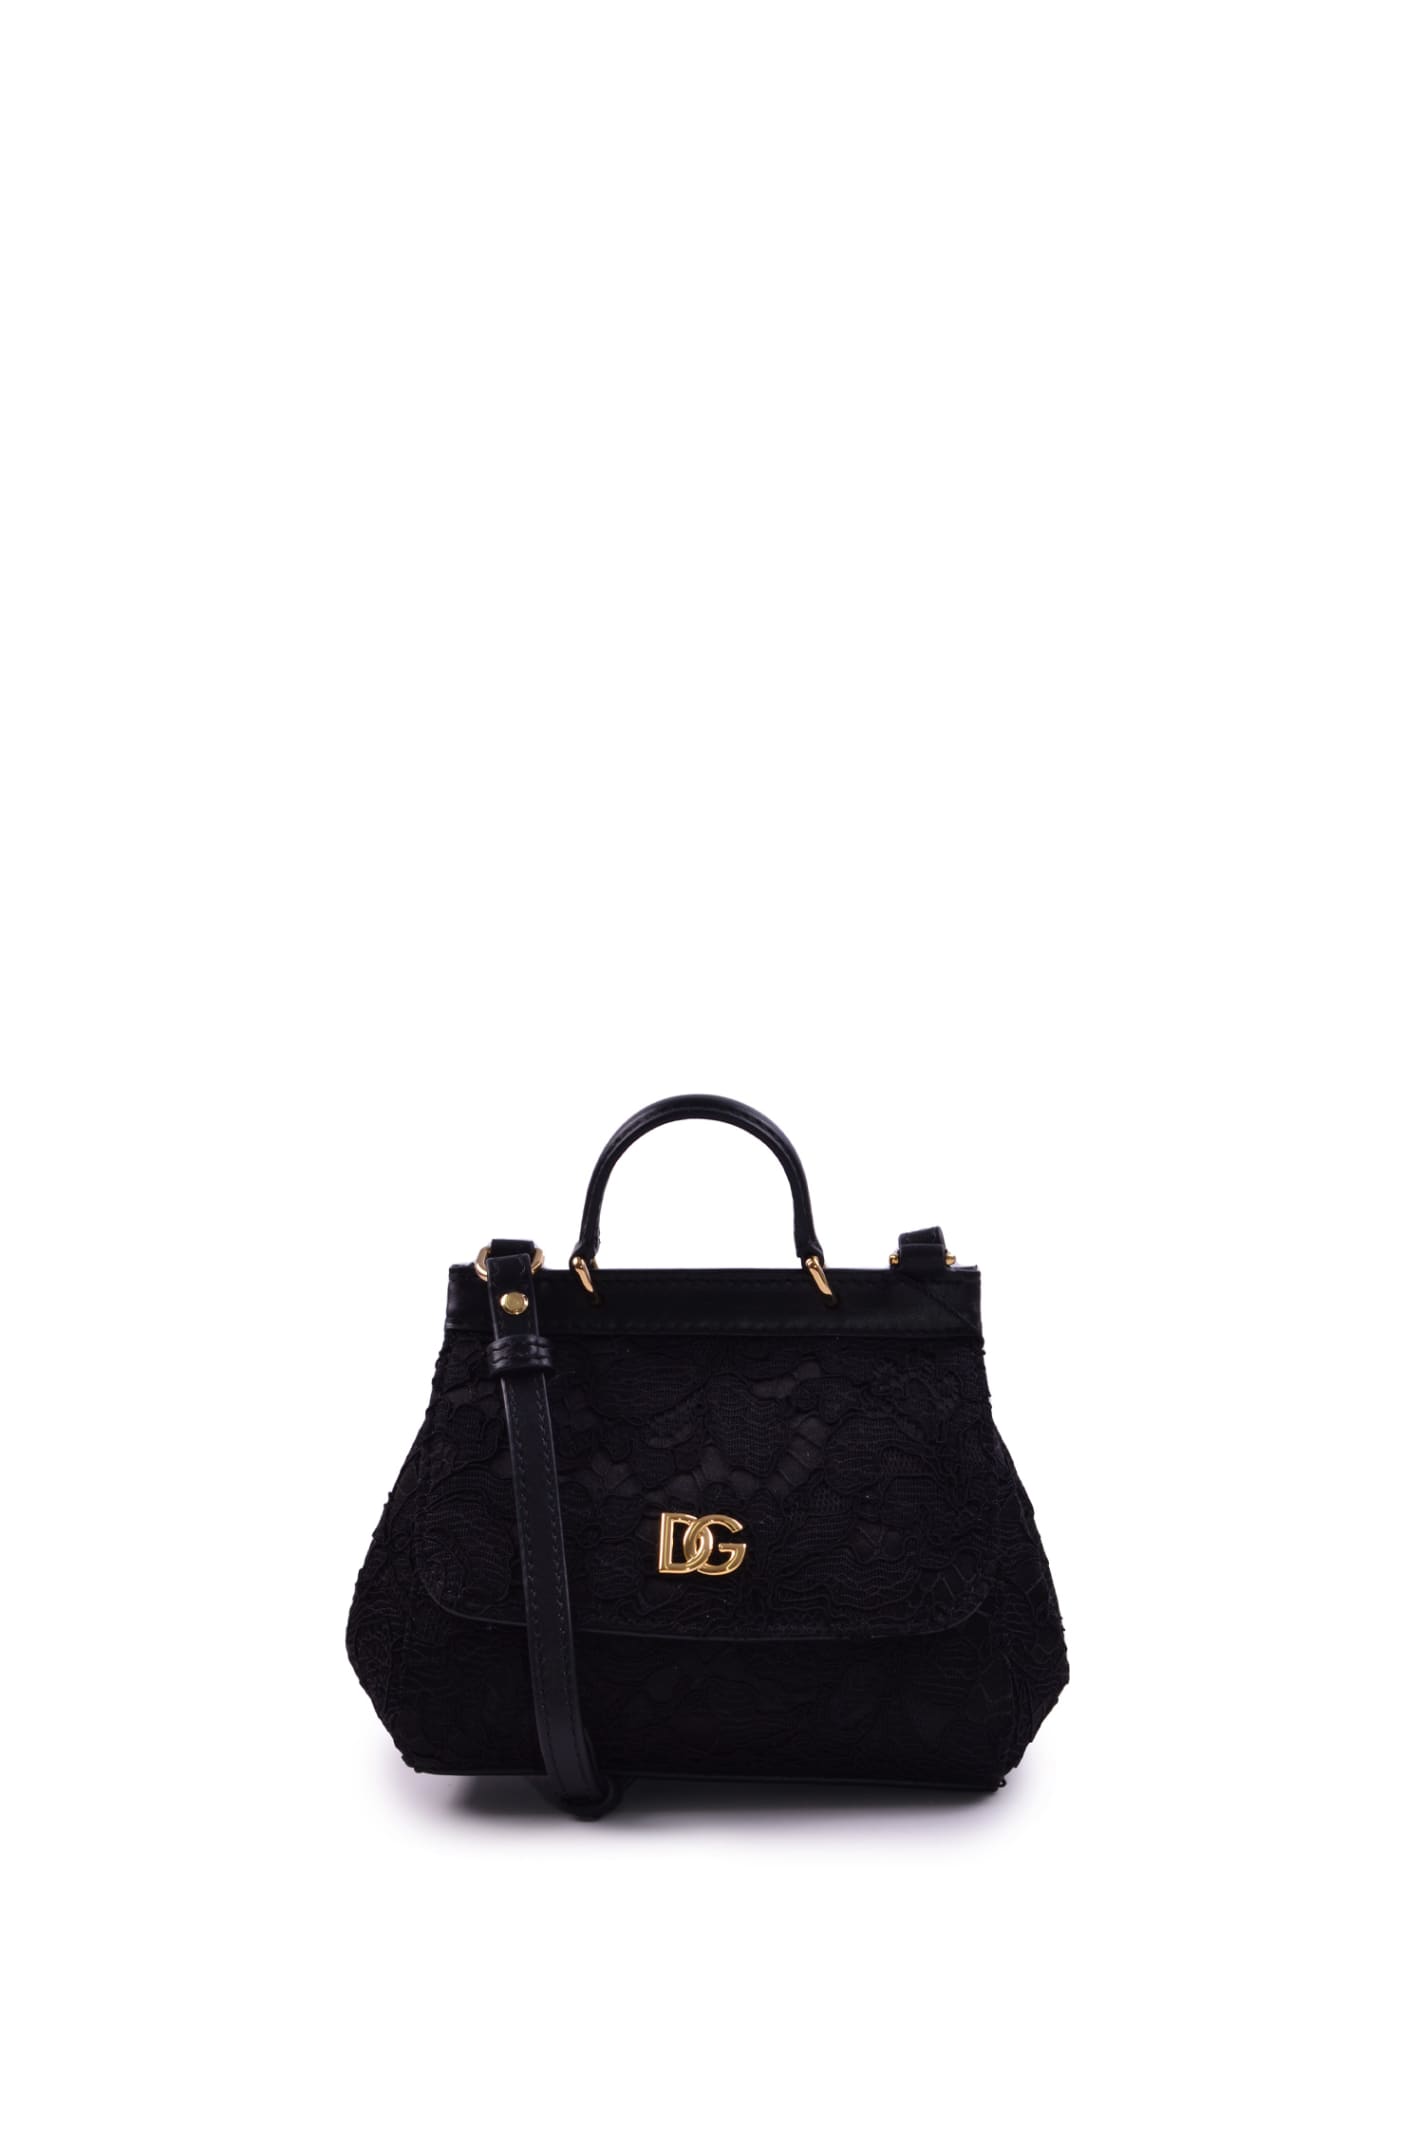 Dolce & Gabbana Cordonetto Lace Mini Bag